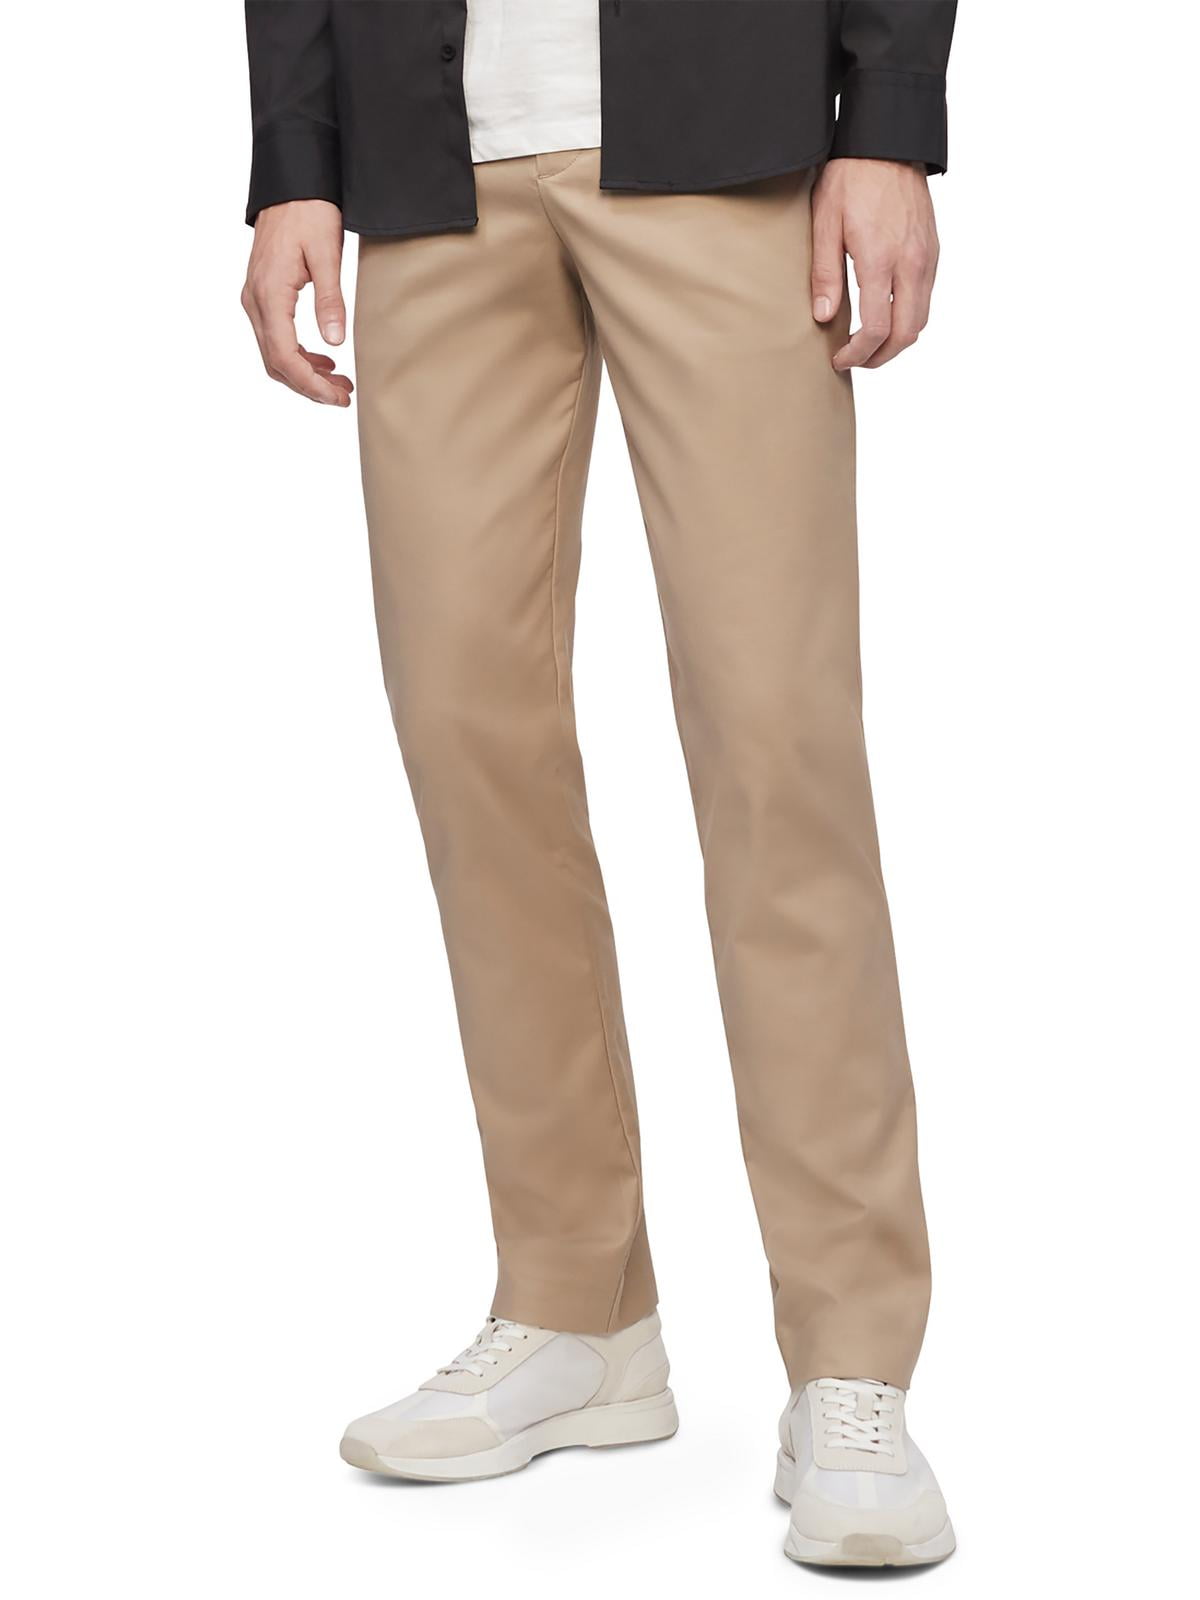 Calvin Klein Slim Fit Suit Separates Pants | Pants| Men's Wearhouse